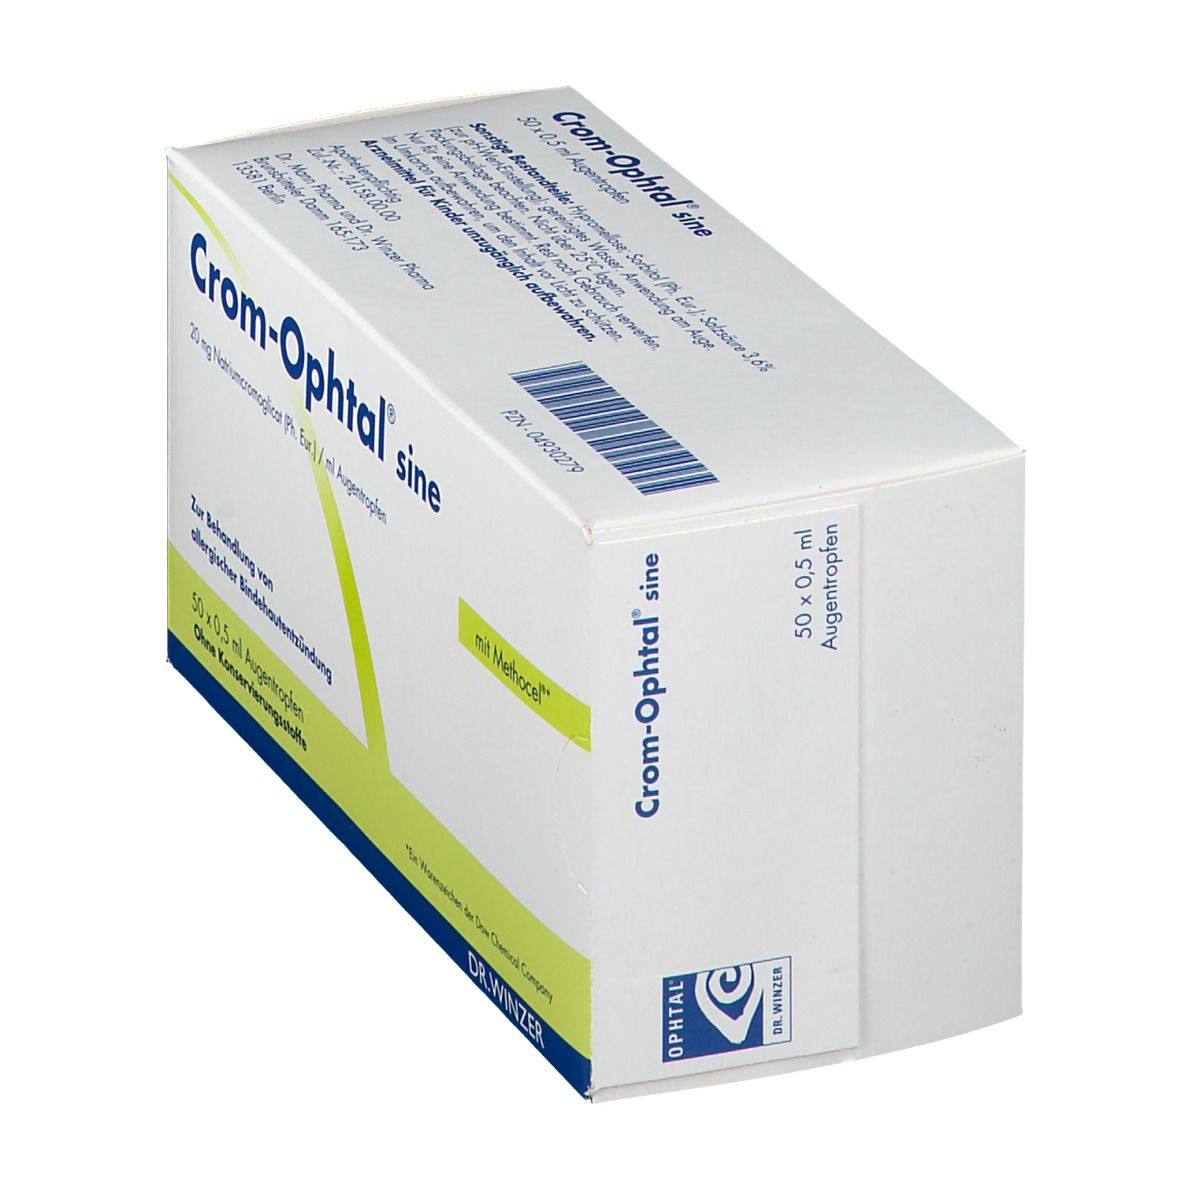 Crom-Ophtal® sine Einzeldosenbehältnisse